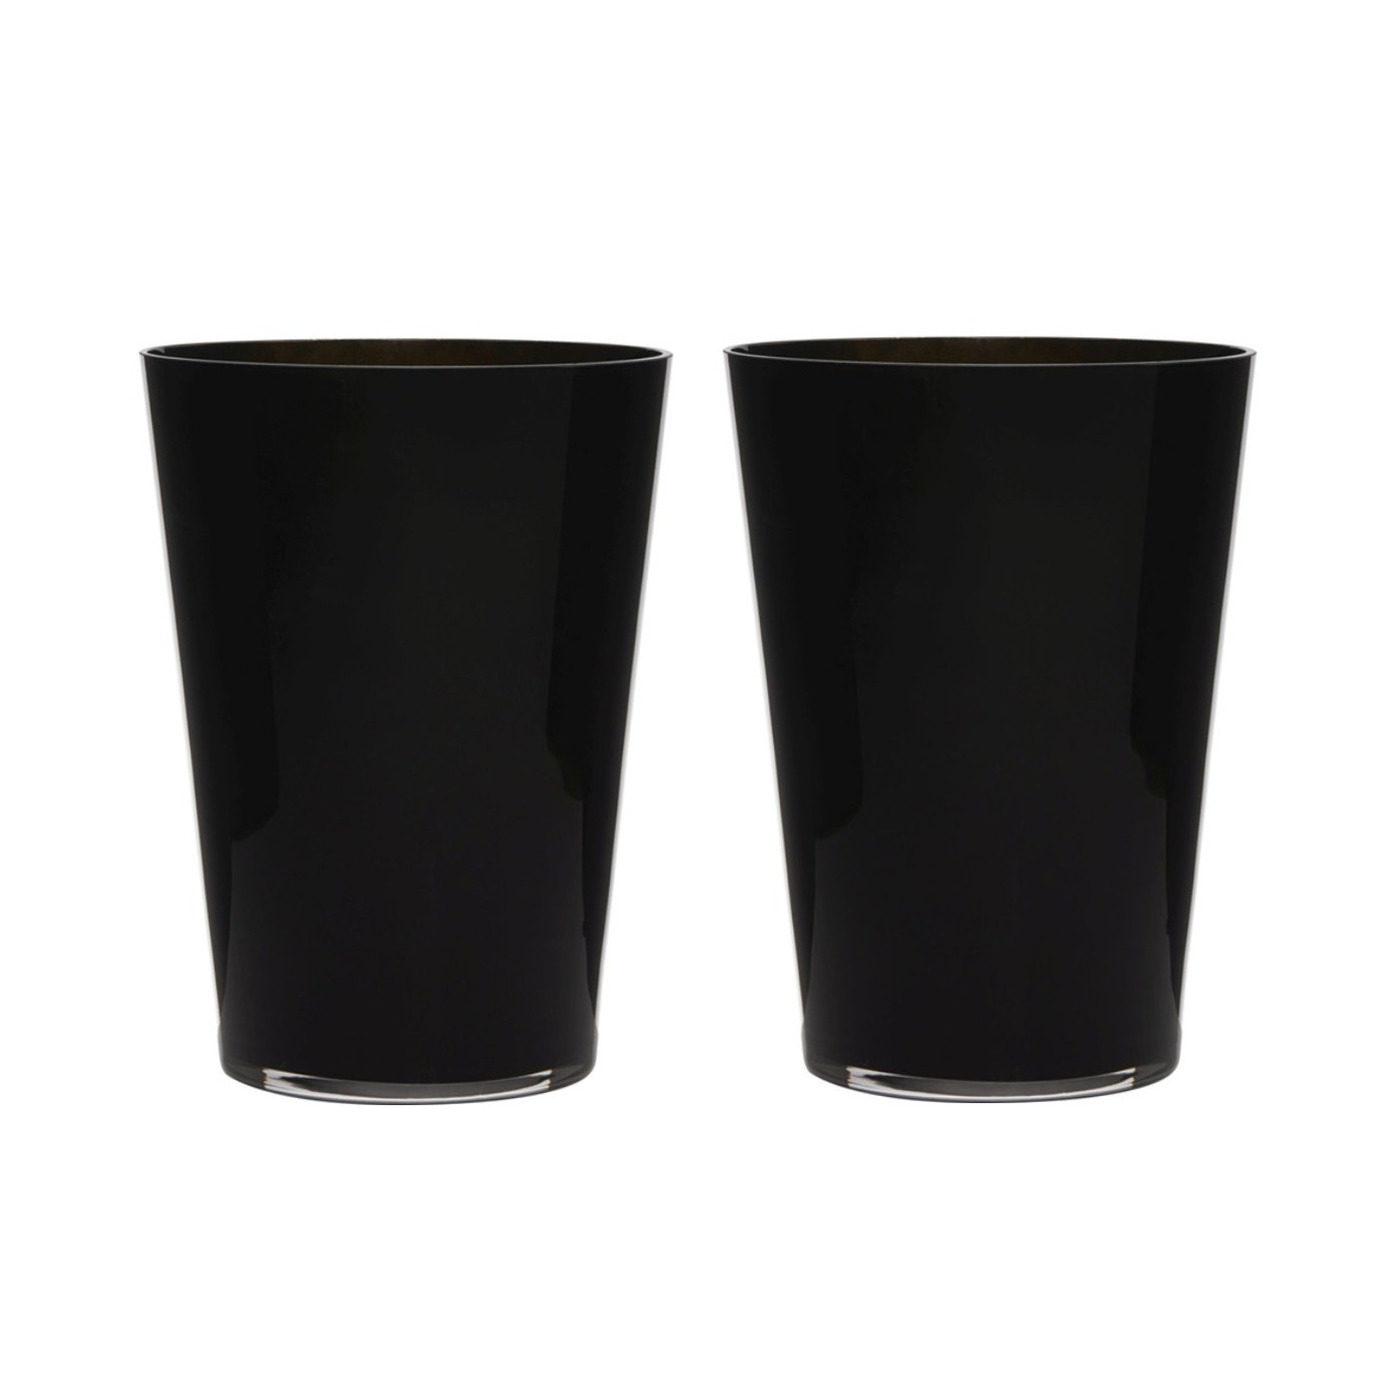 2x stuks luxe stijlvolle zwarte bloemenvaas 30 x 22 cm van glas